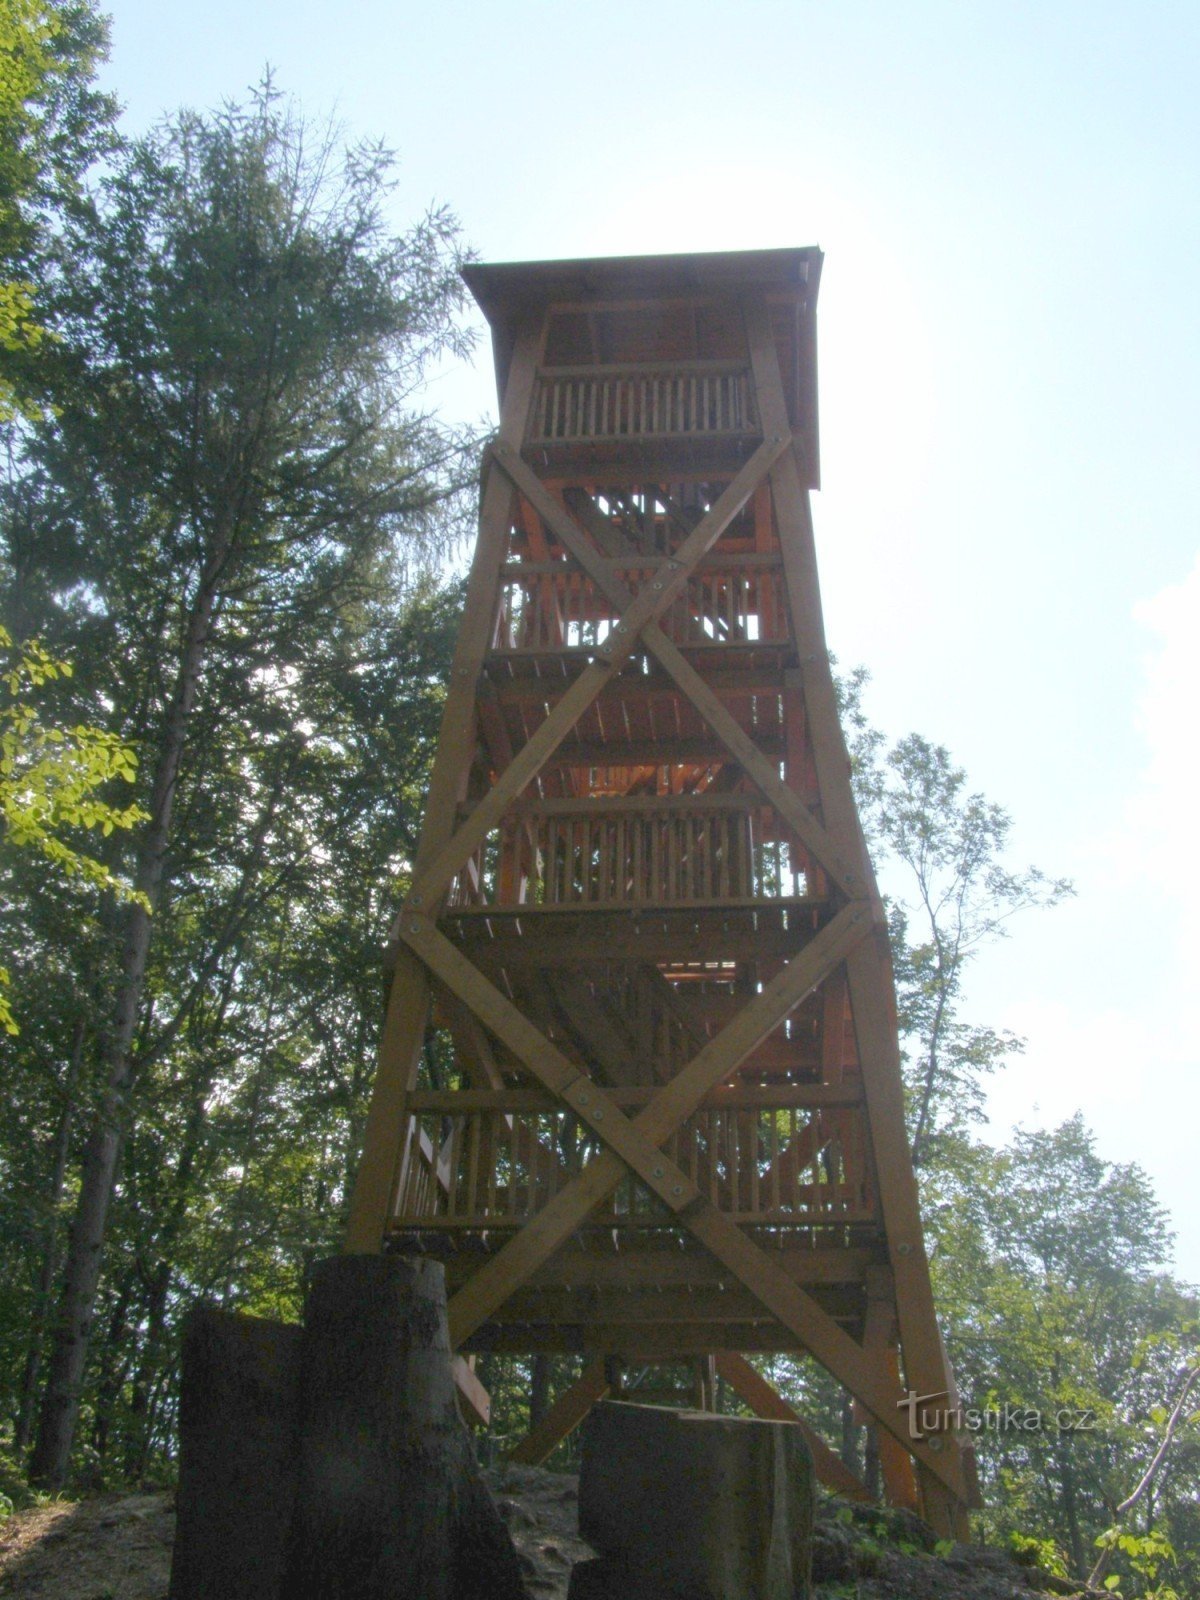 Lookout tower at Bezručová lookout near Kopřivnice